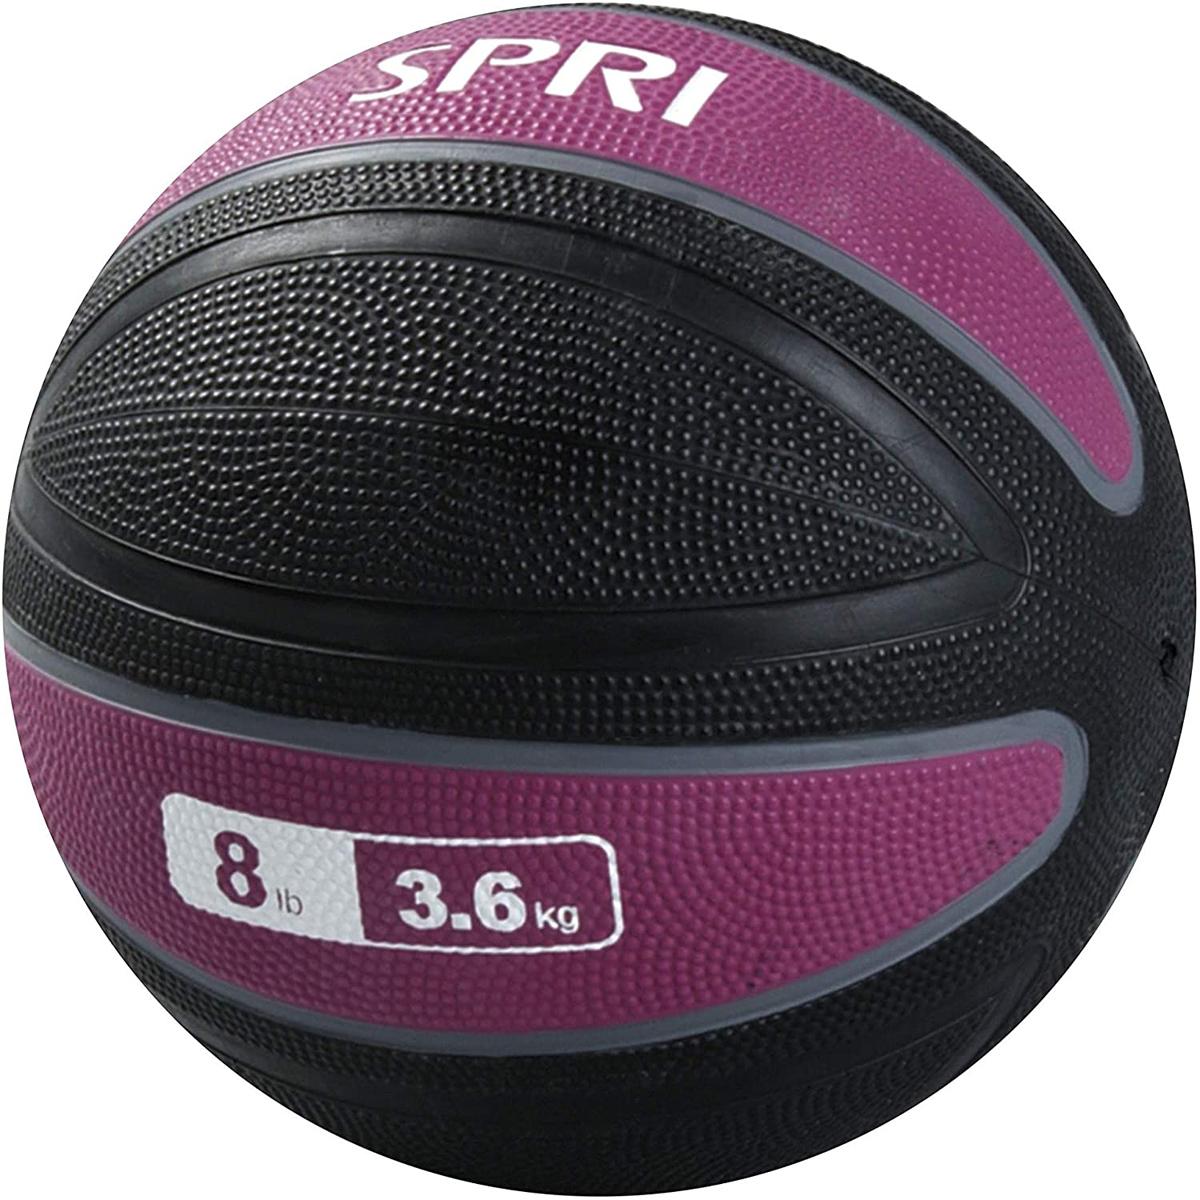 6Lb SPRI Xerball Medicine Ball for $21.58